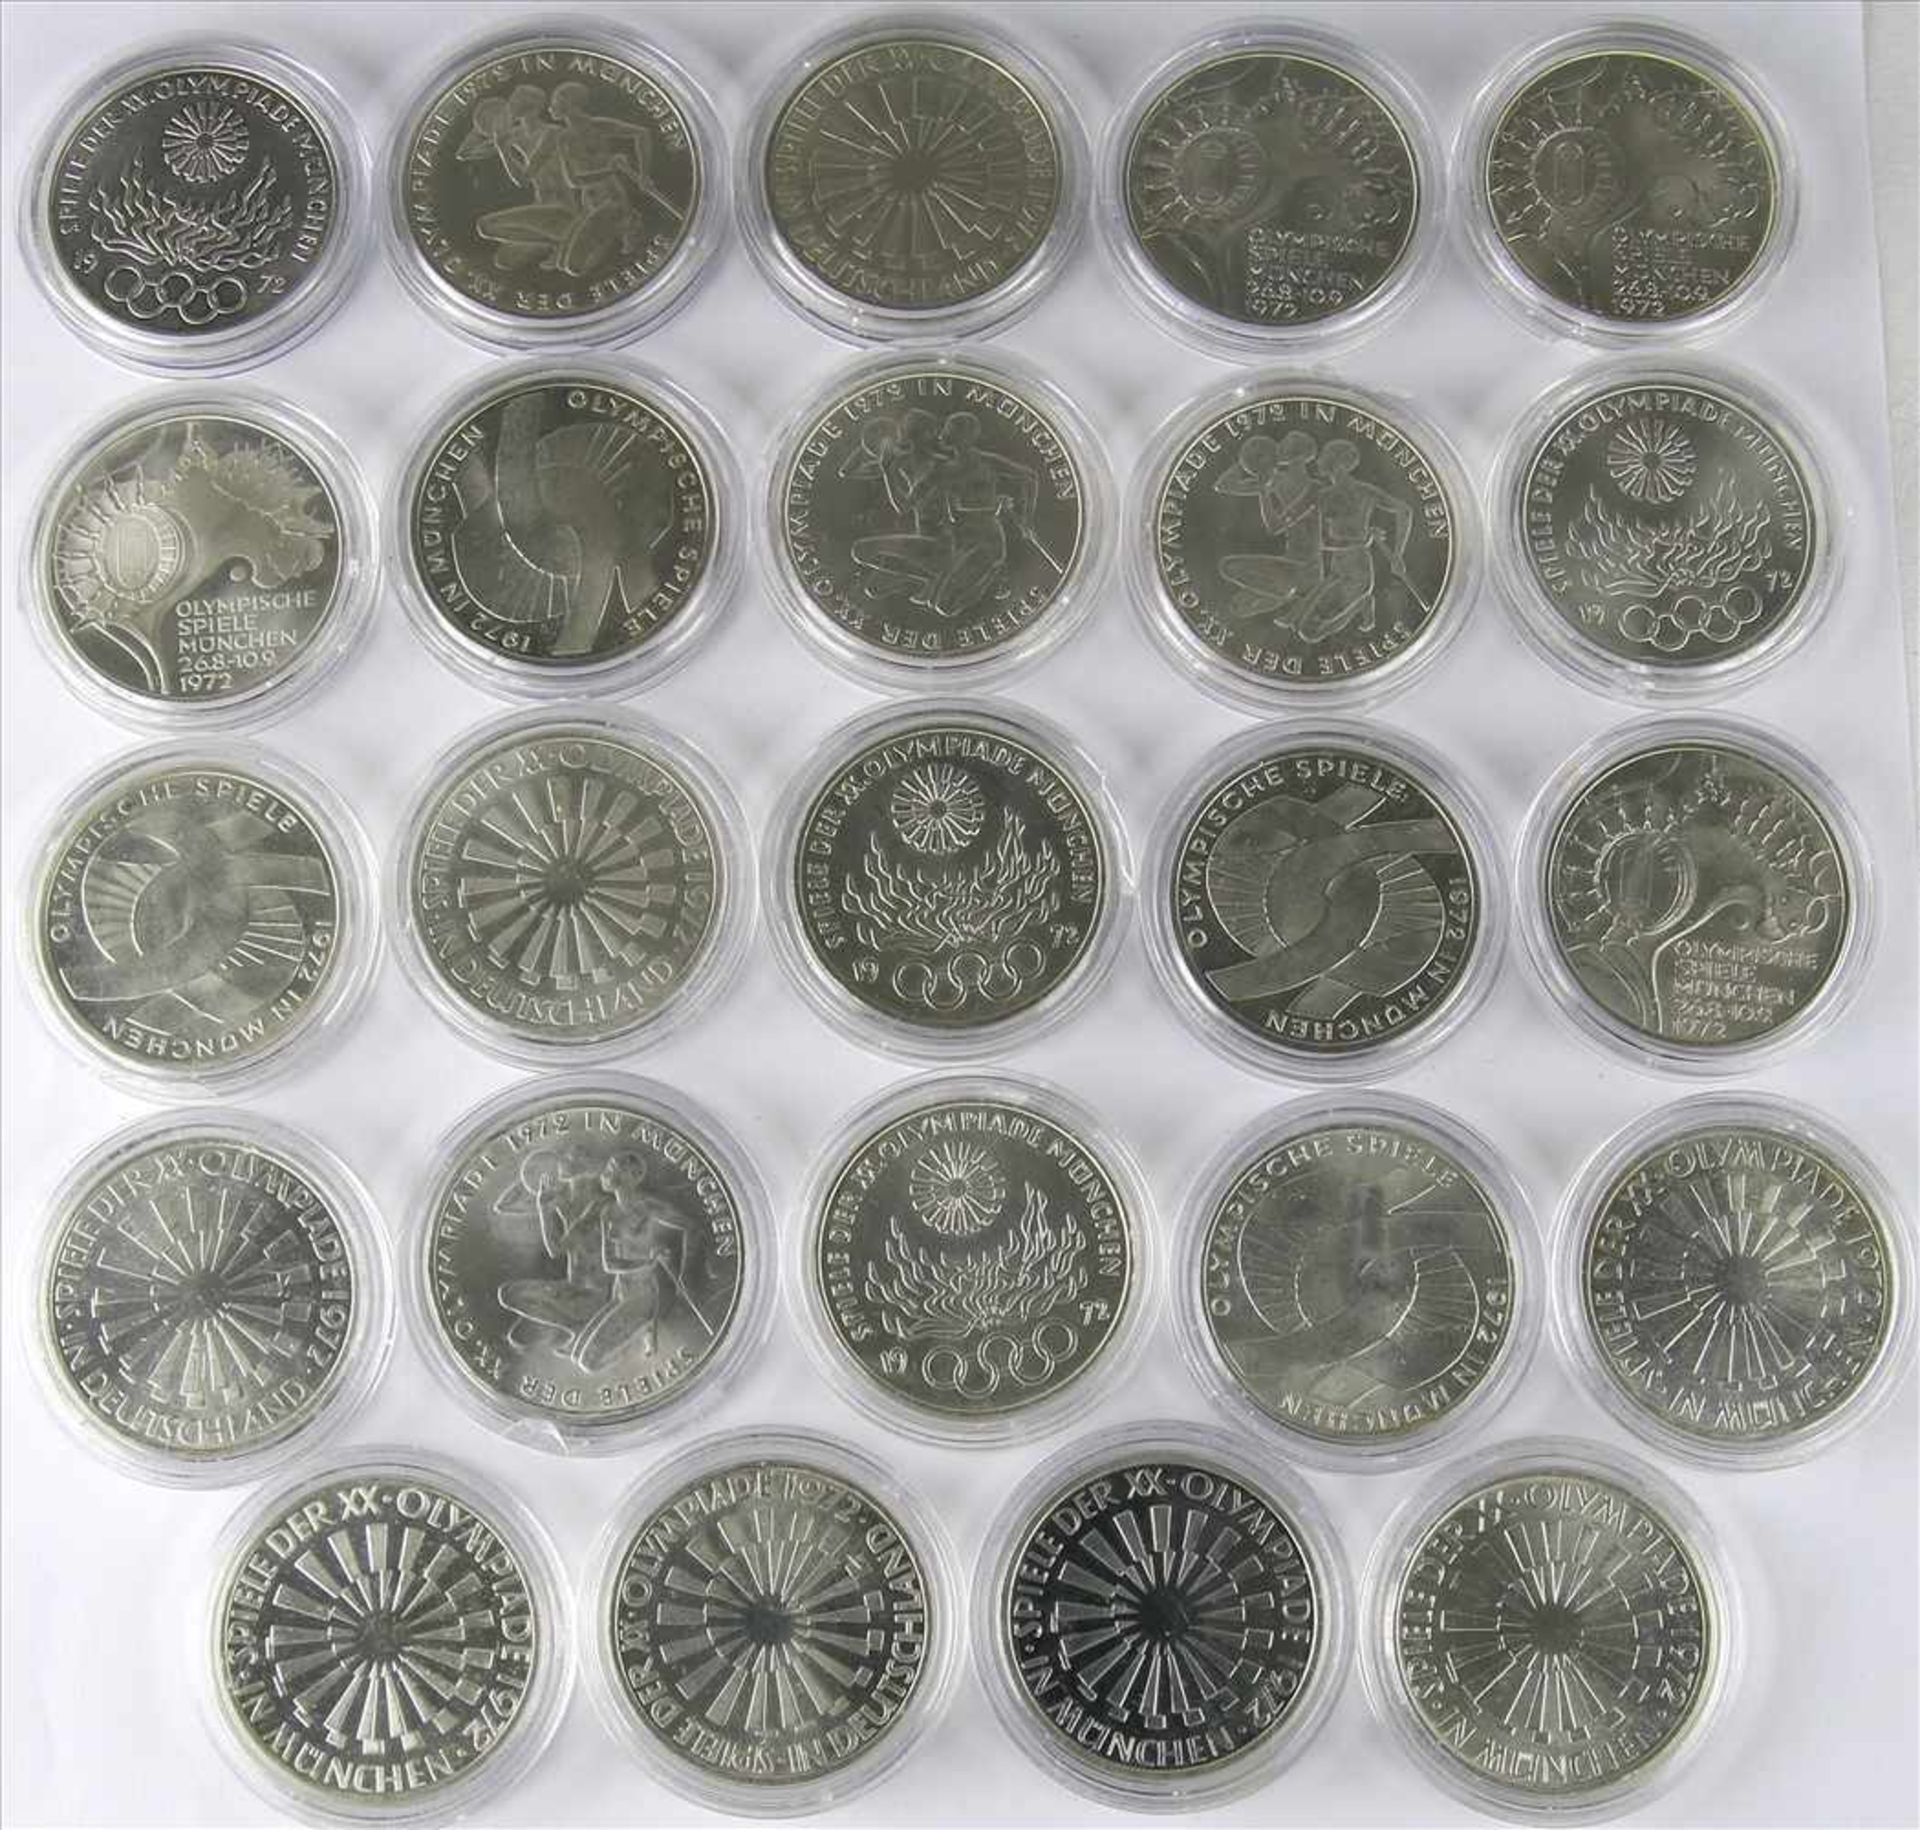 24 OlympiamünzenMünchen 1972. 10 DM. 6 Sätze á 4 Münzen (1 x doppelt) Präge D, F, G und J. Jeweils